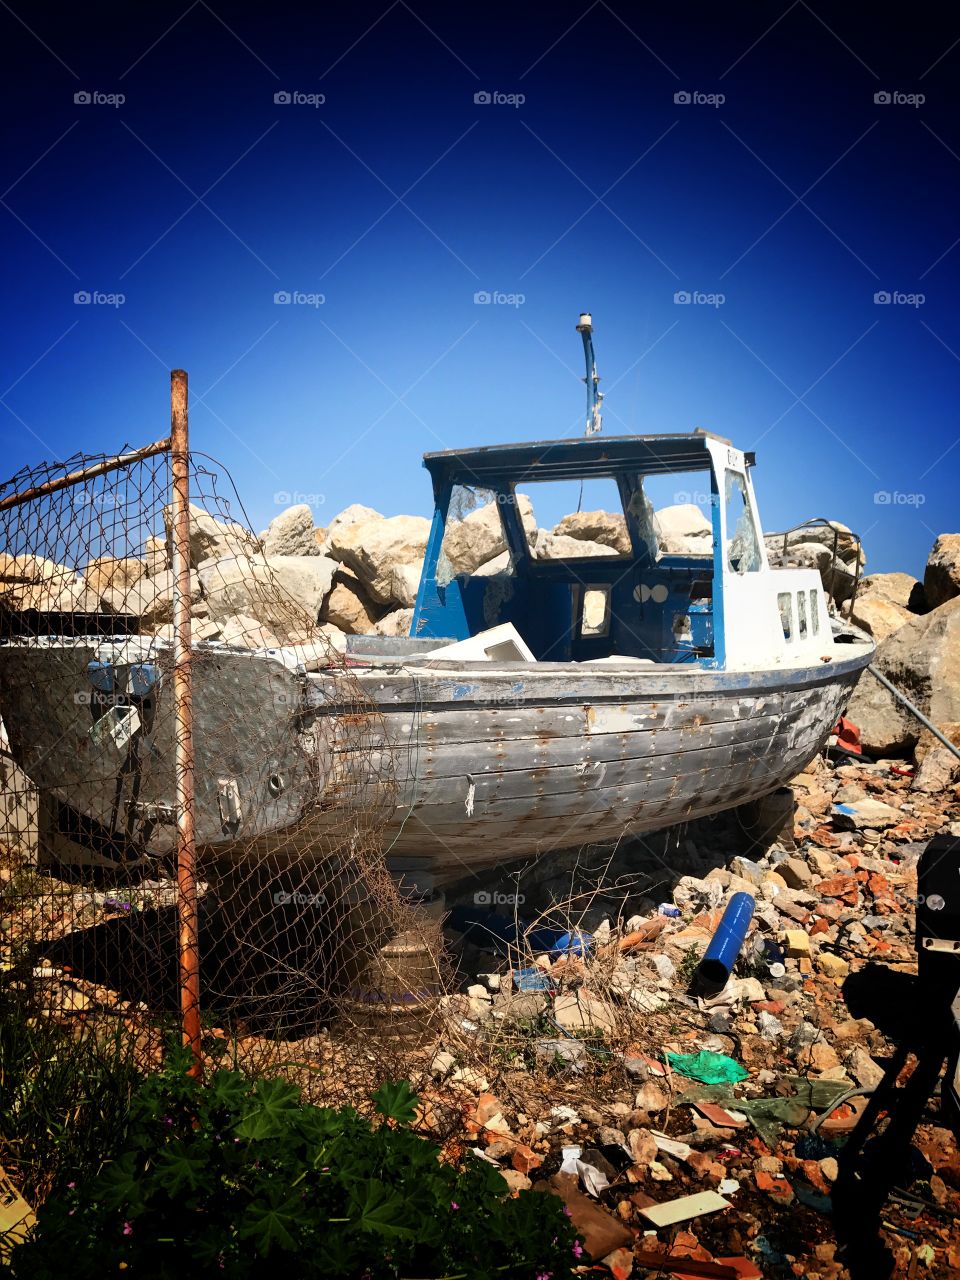 Boat, abandoned, sea